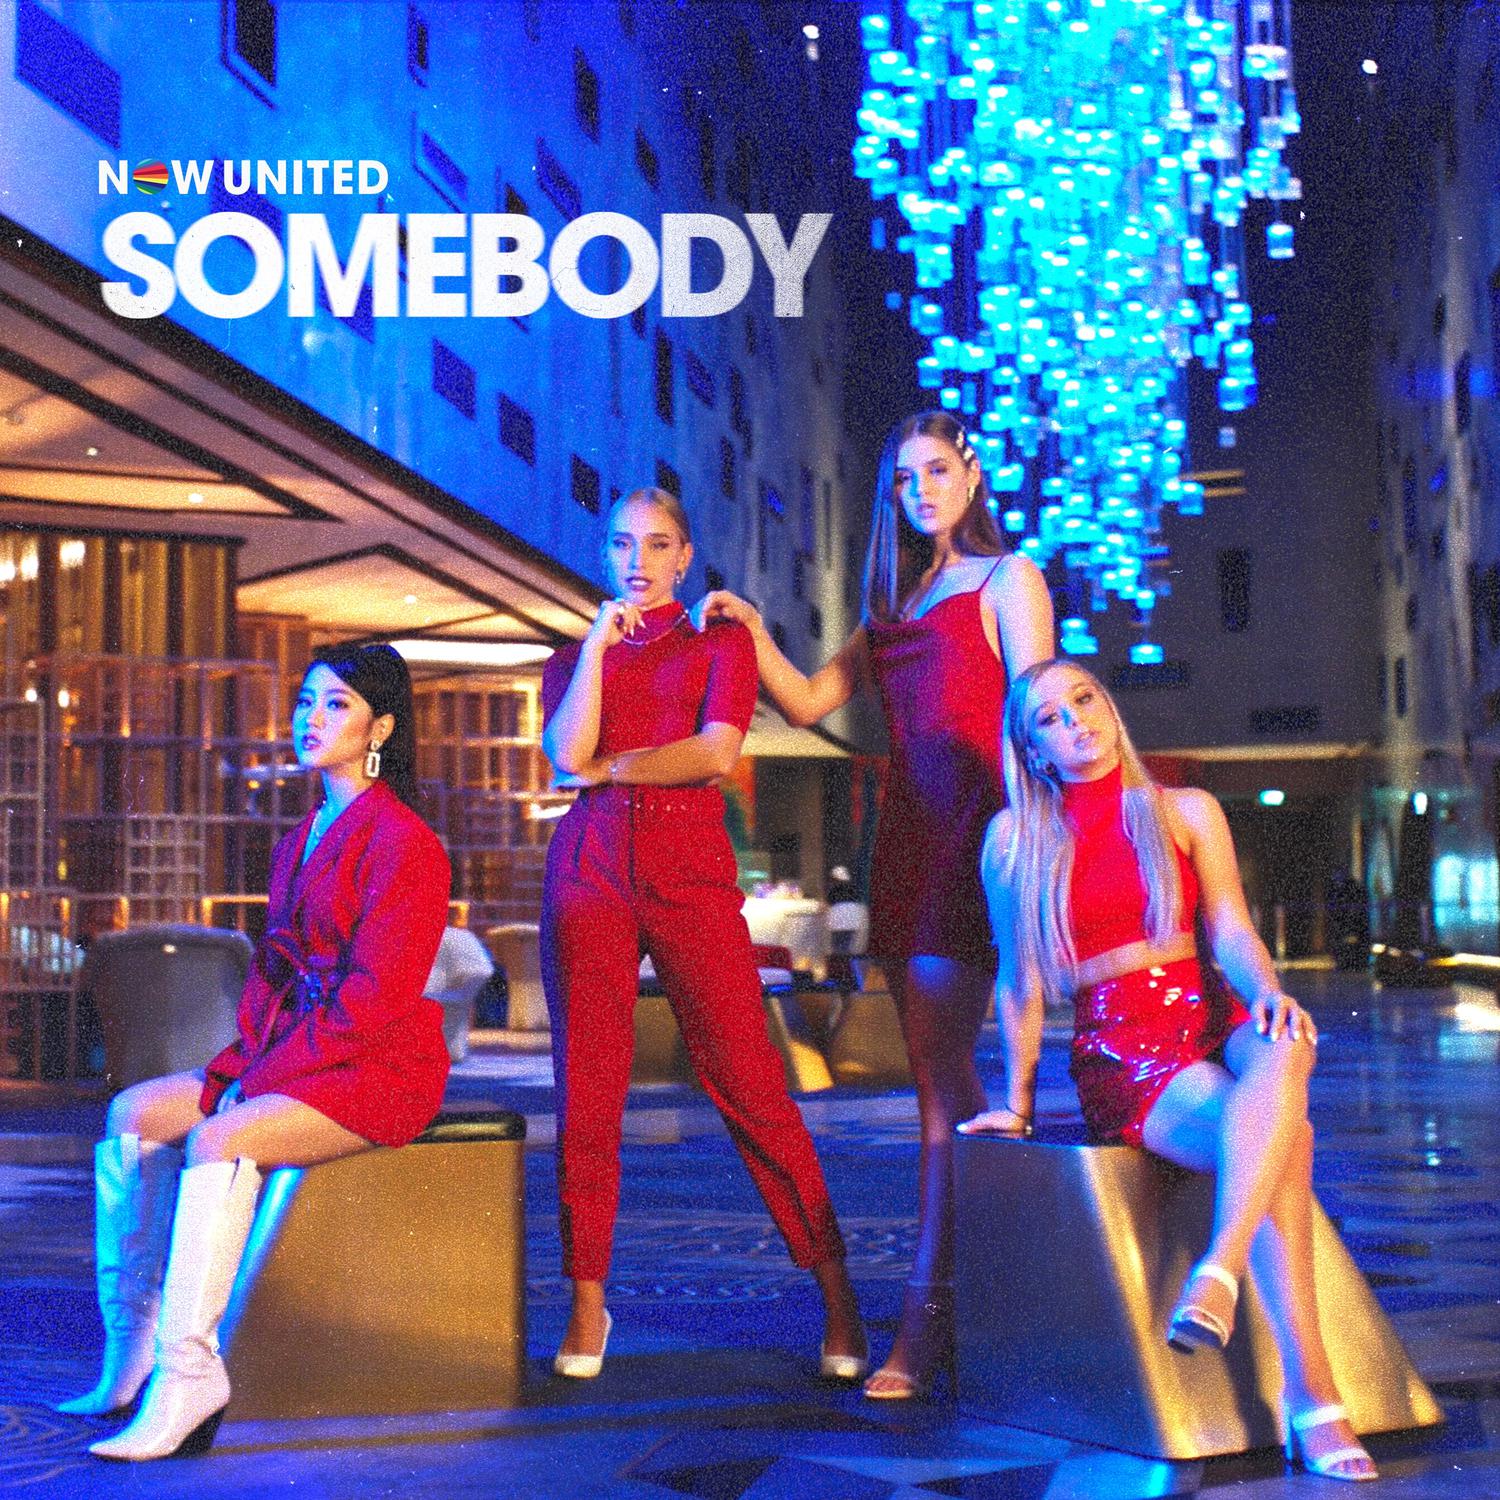 Now United - Somebody